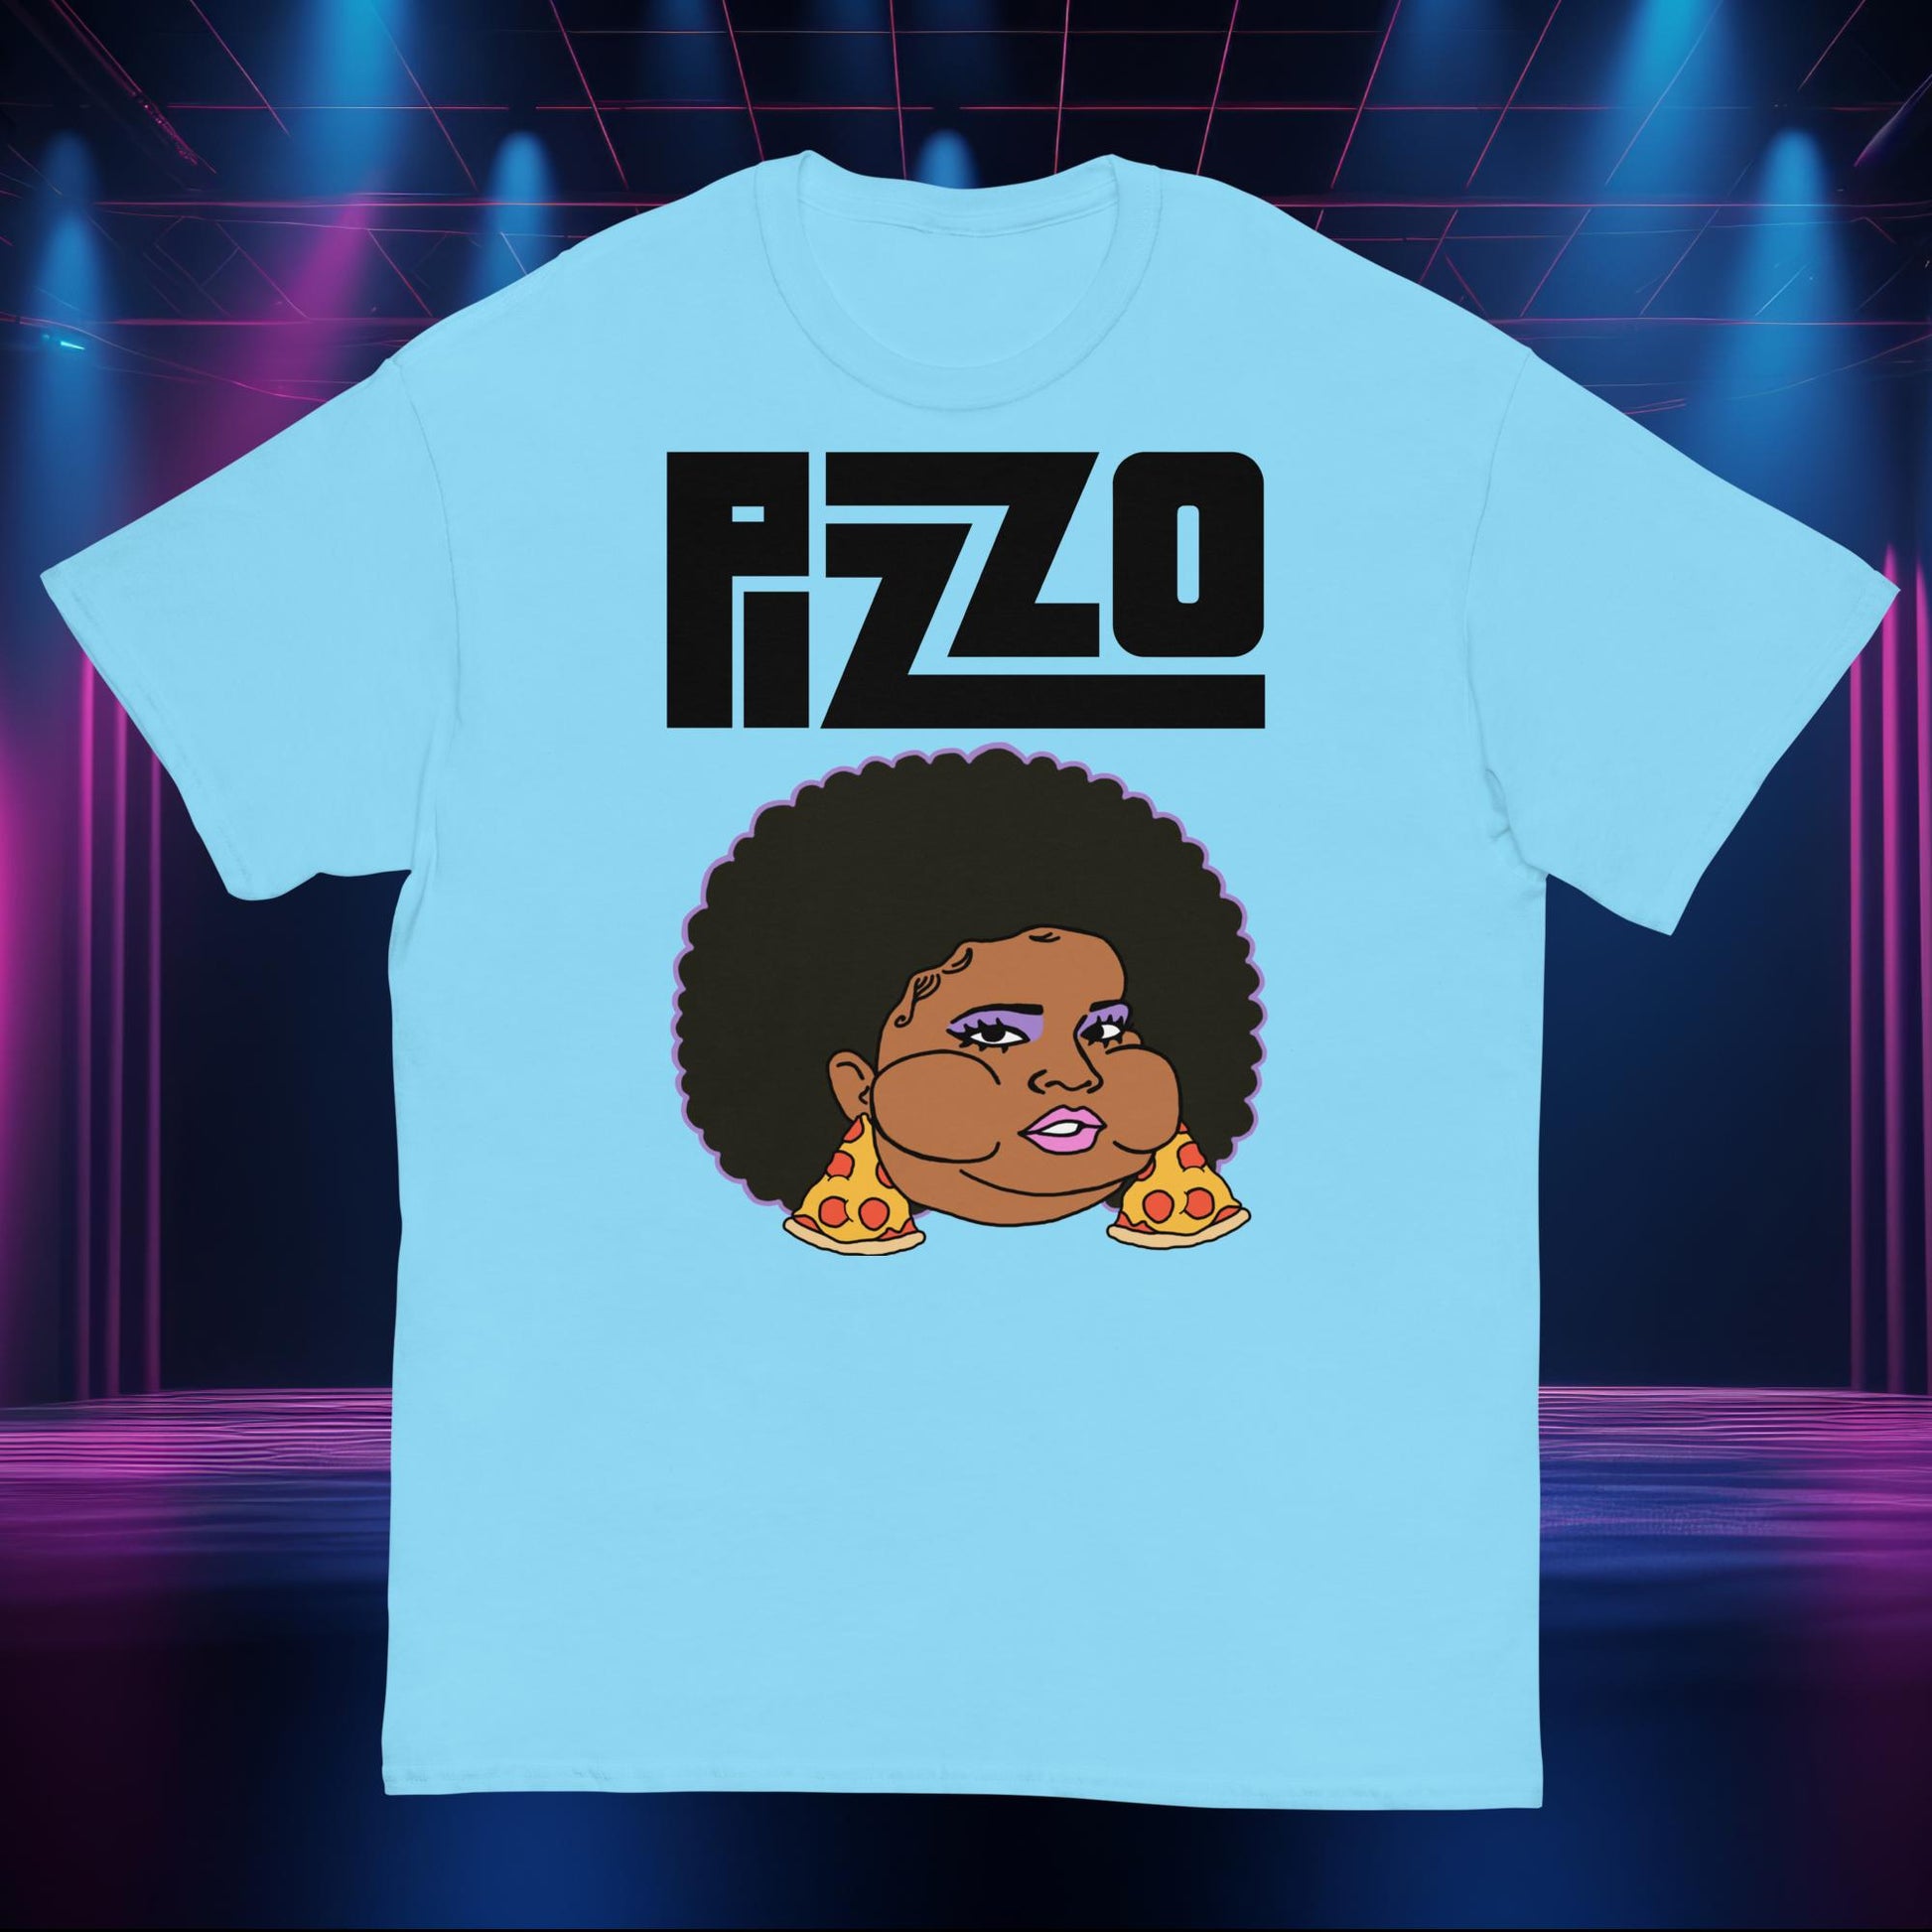 Pizzo Lizzo Pizza Lizzo Merch Lizzo Gift Body Positivity Body empowerment Lizzo shirt Next Cult Brand